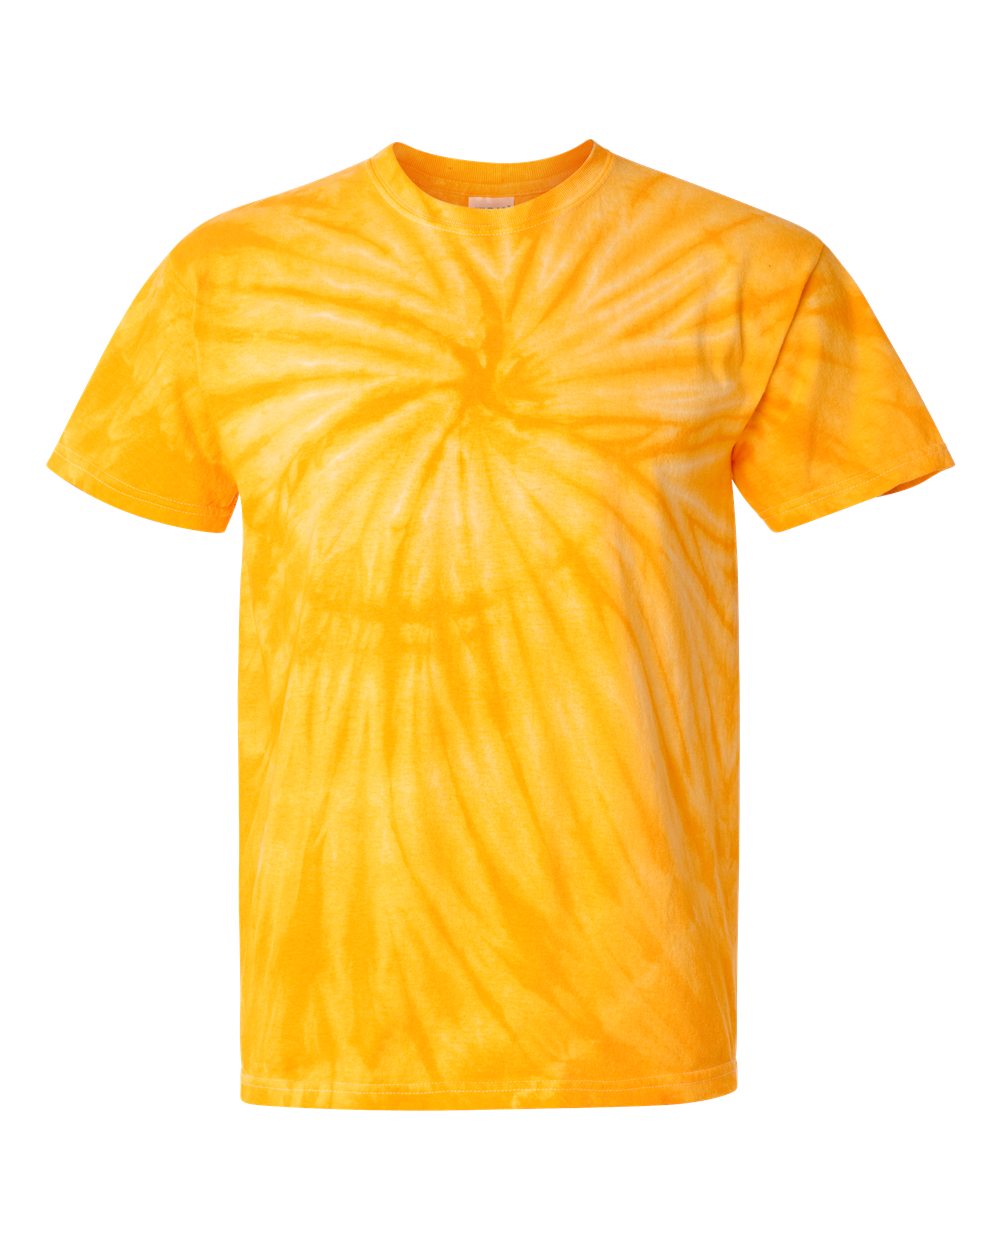 Dyneomite Cyclone Pinwheel Tie-Dyed T-Shirt